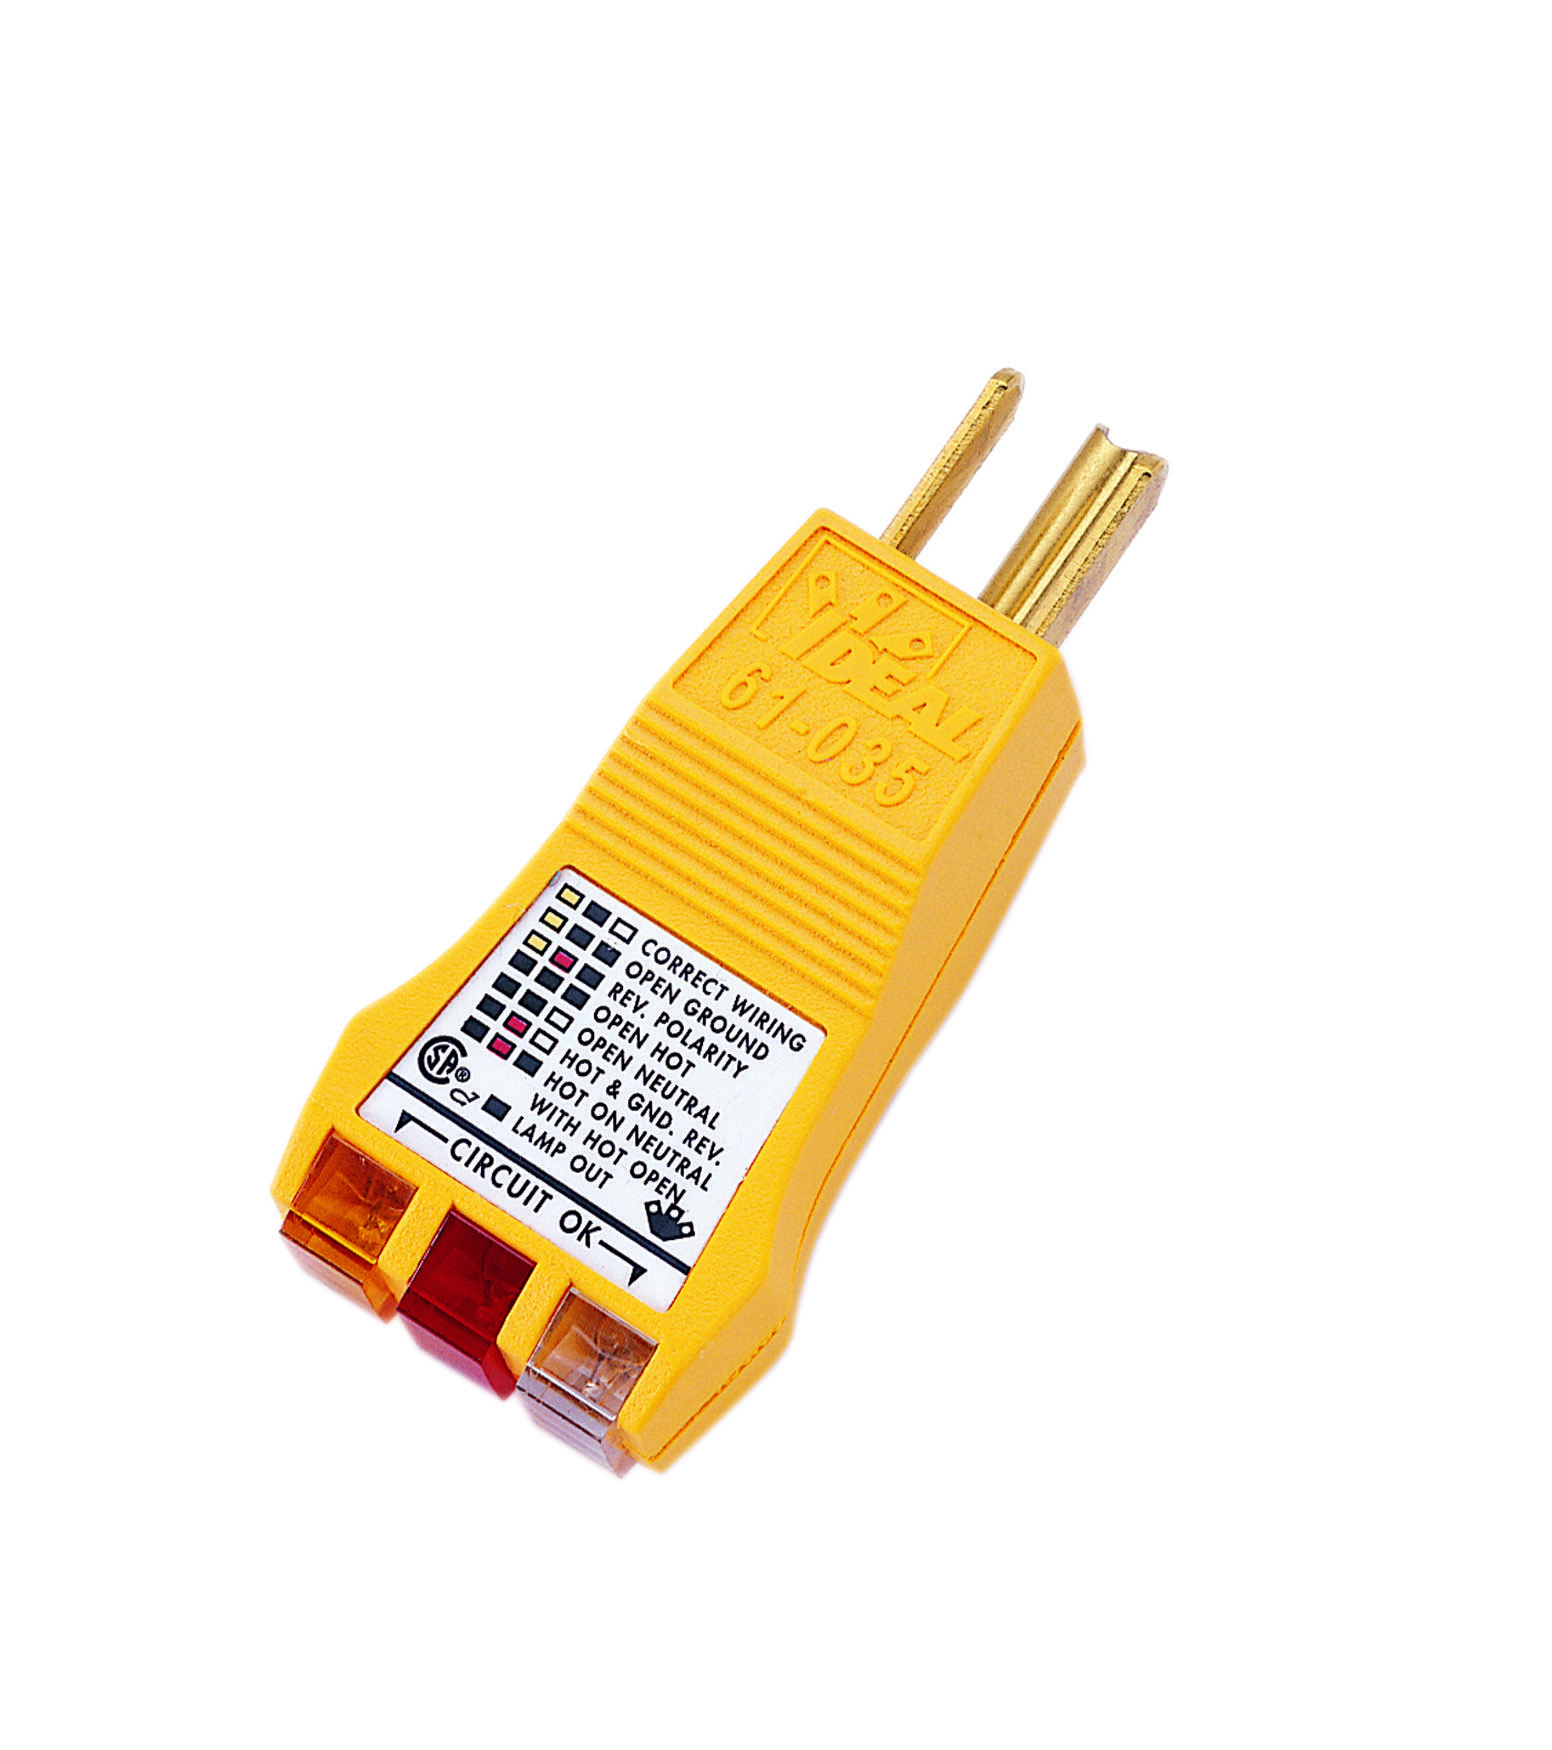 61035 - E-Z Check Circuit Tester - Ideal